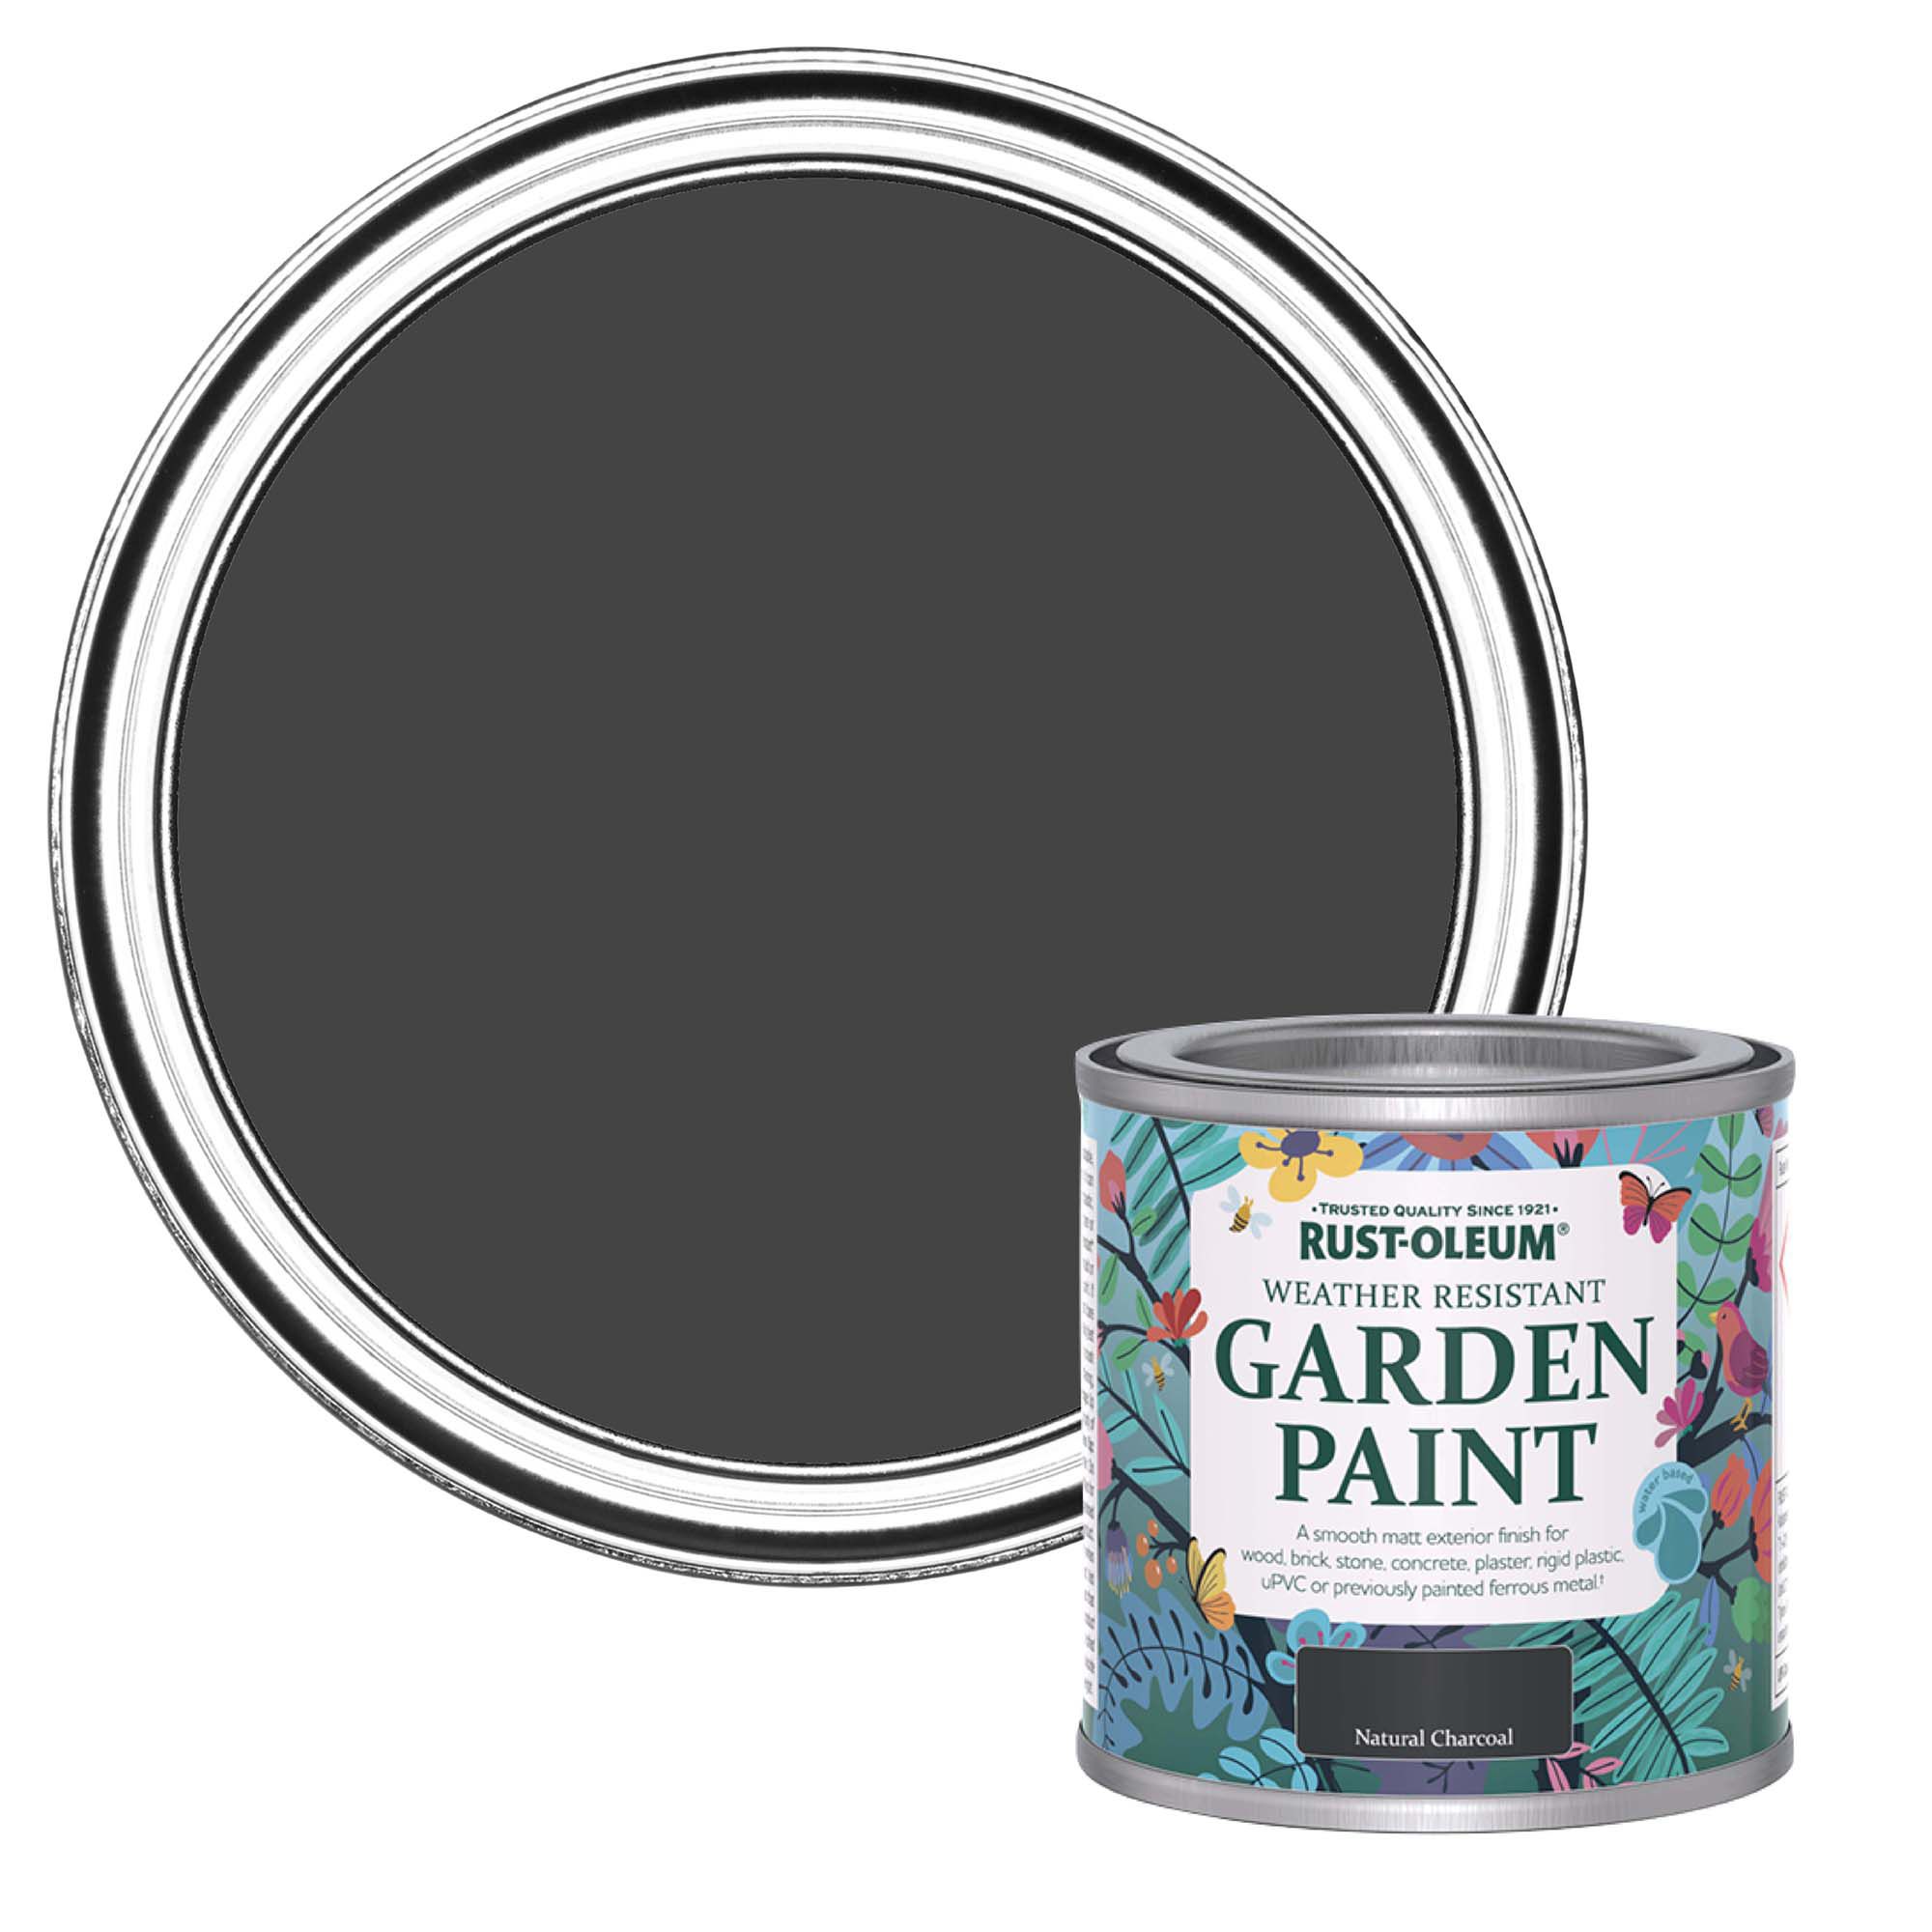 Harris Trade Emulsion & Gloss ½ Fine tip Paint brush